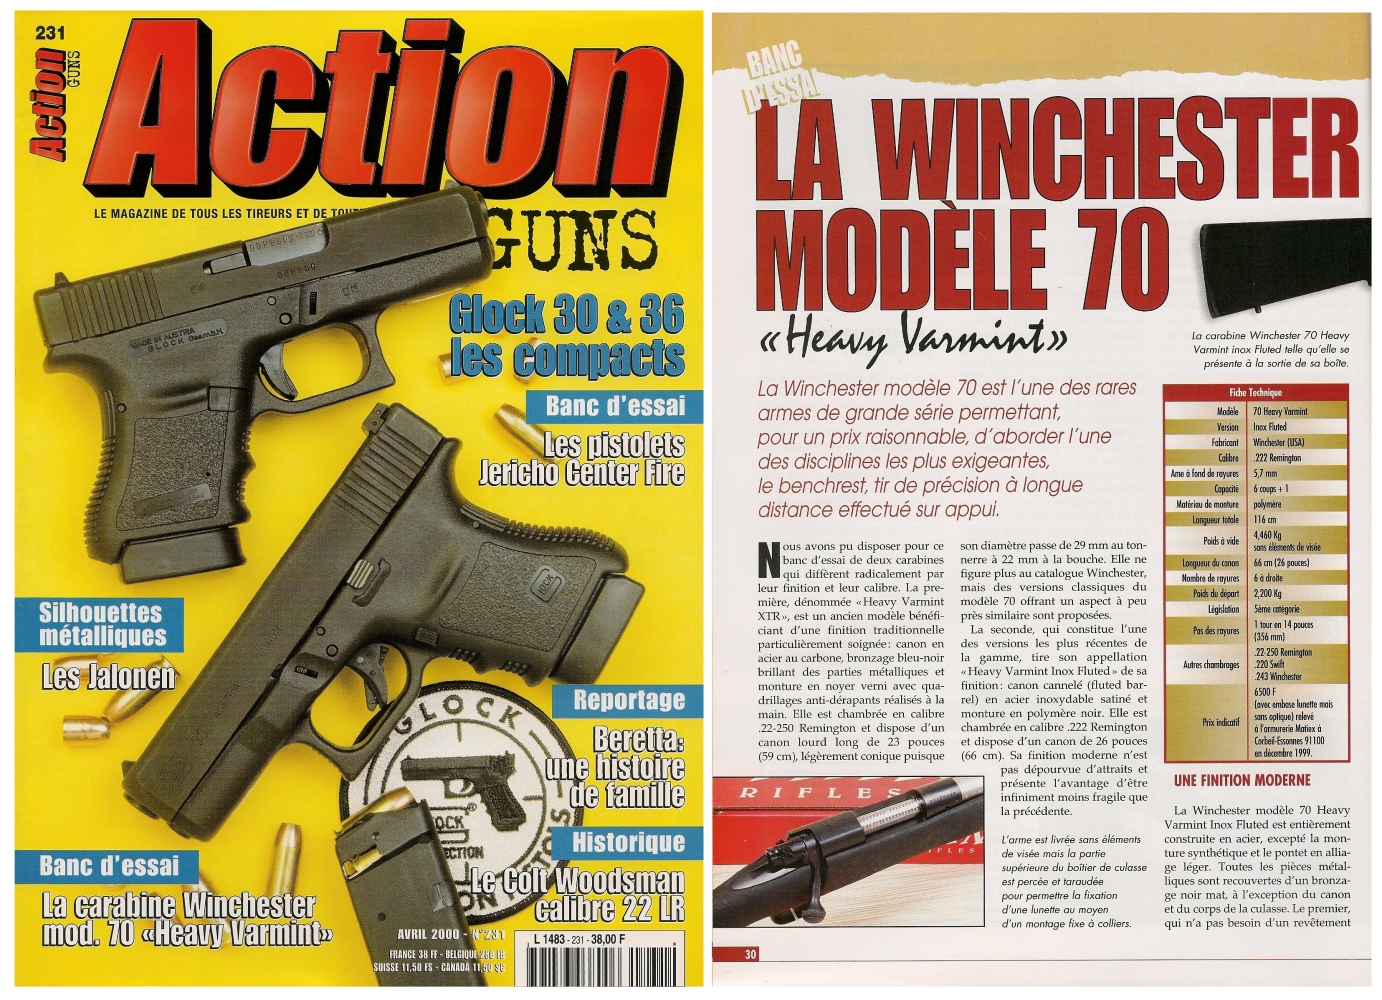 Le banc d'essai des carabines Winchester modèle 70 « Heavy Varmint » en calibre .22-250 et .222 a été publié sur 6 pages dans le magazine Action Guns n°231 (avril 2000).